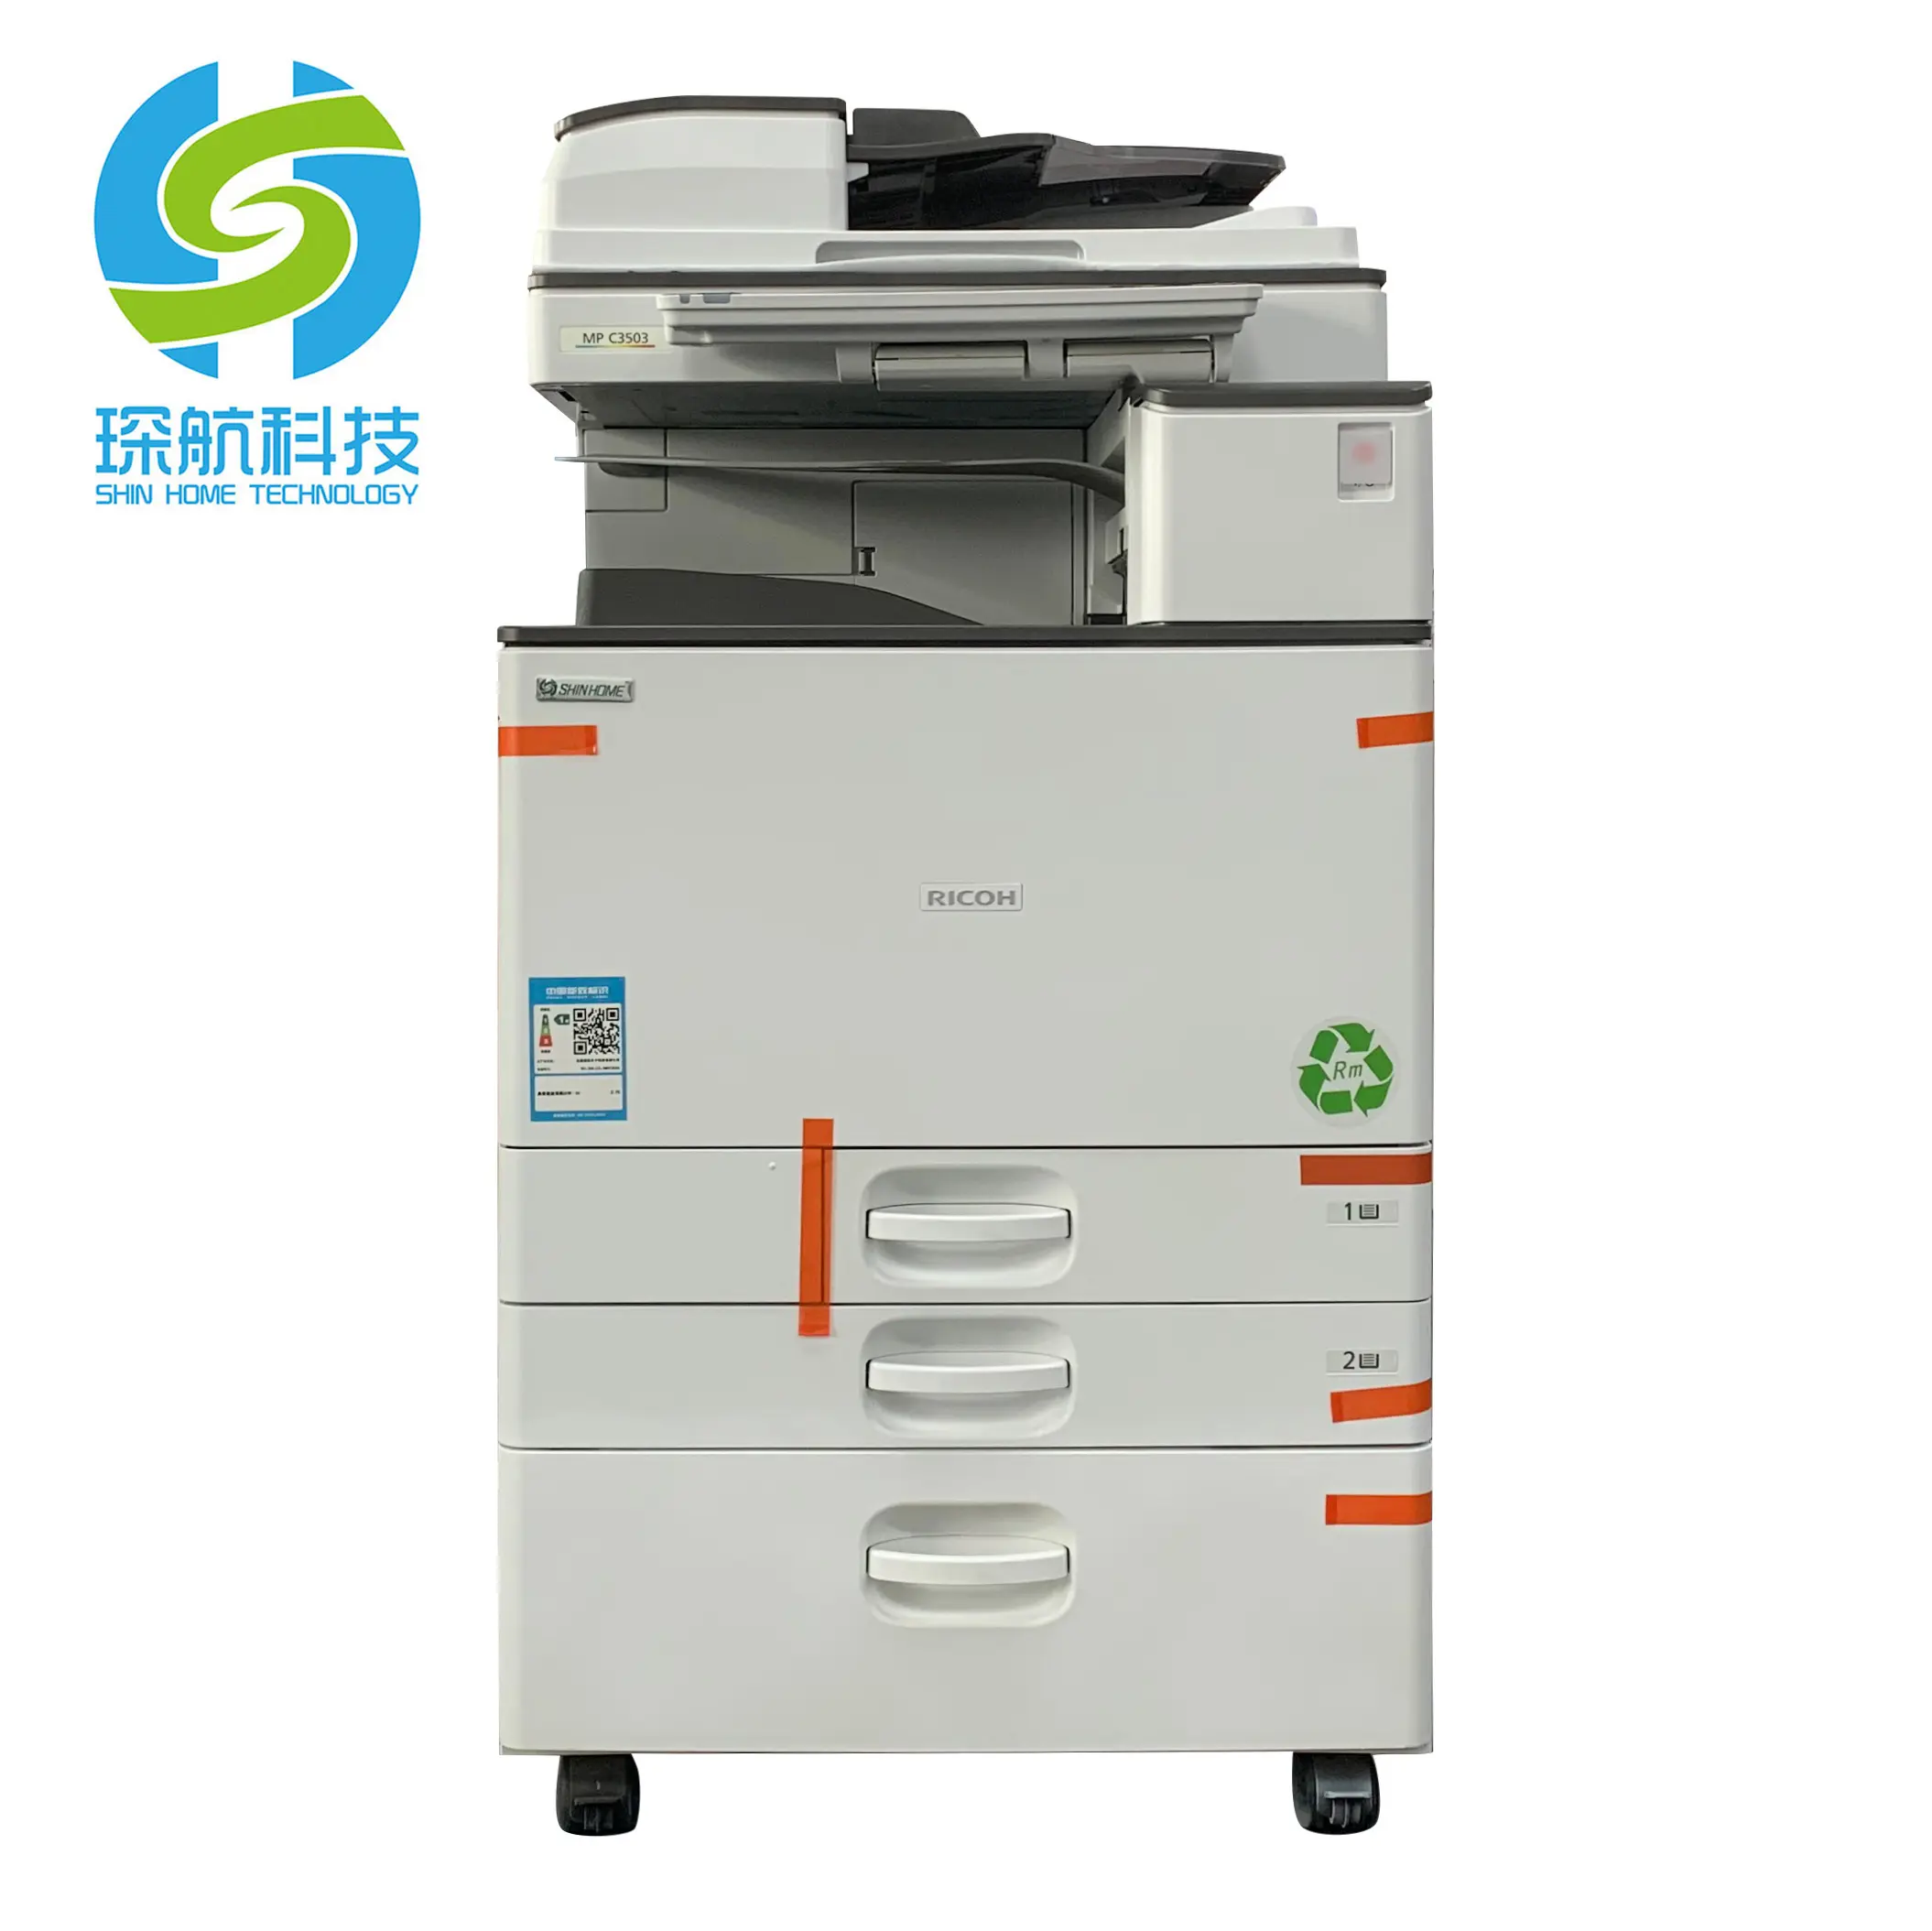 Цифровой принтер A3, многофункциональная цветная копировальная машина, копировальная машина для фотокопирования, копировальная машина для ricoh MPC3503SP, фотокопировальная машина